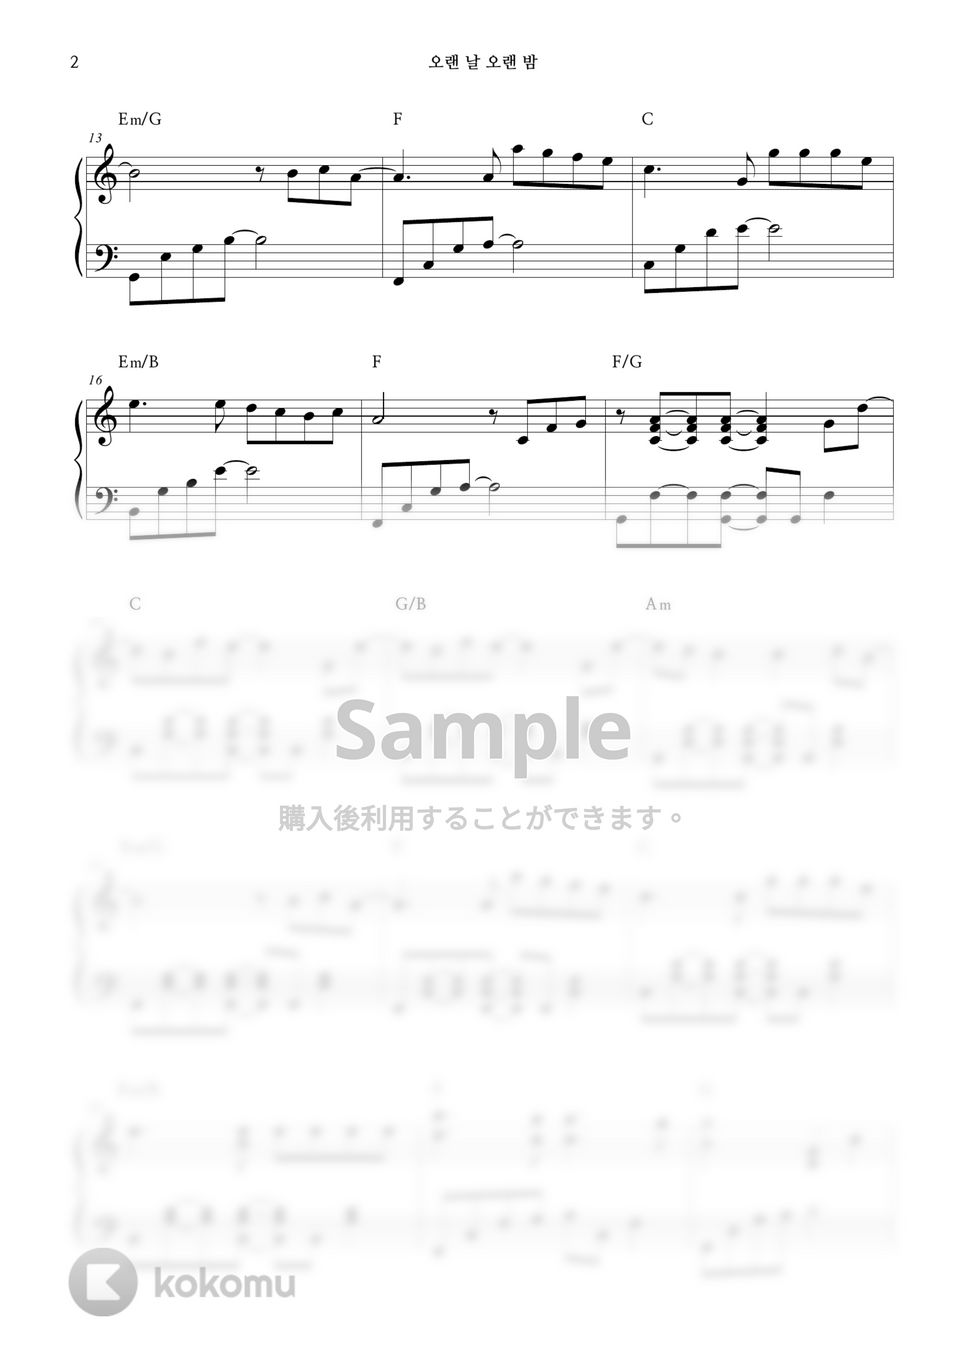 楽童ミュージシャン - LAST GOODBYE by HISIHINE